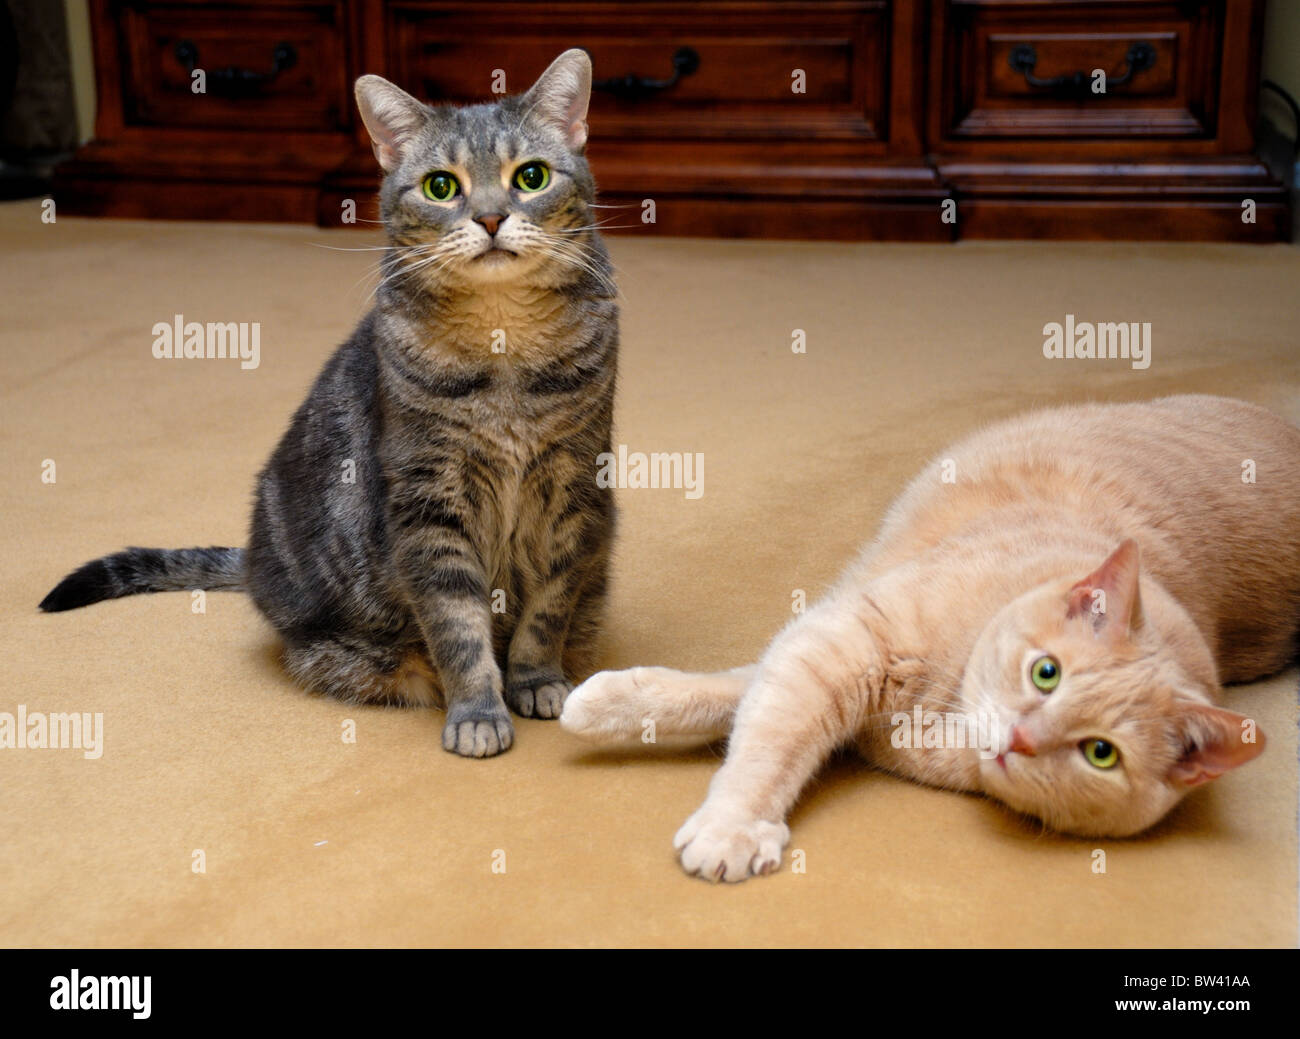 A regal American Shorthair cat (izquierda) y un gato atigrado interna naranja posan juntos para un retrato. Foto de stock